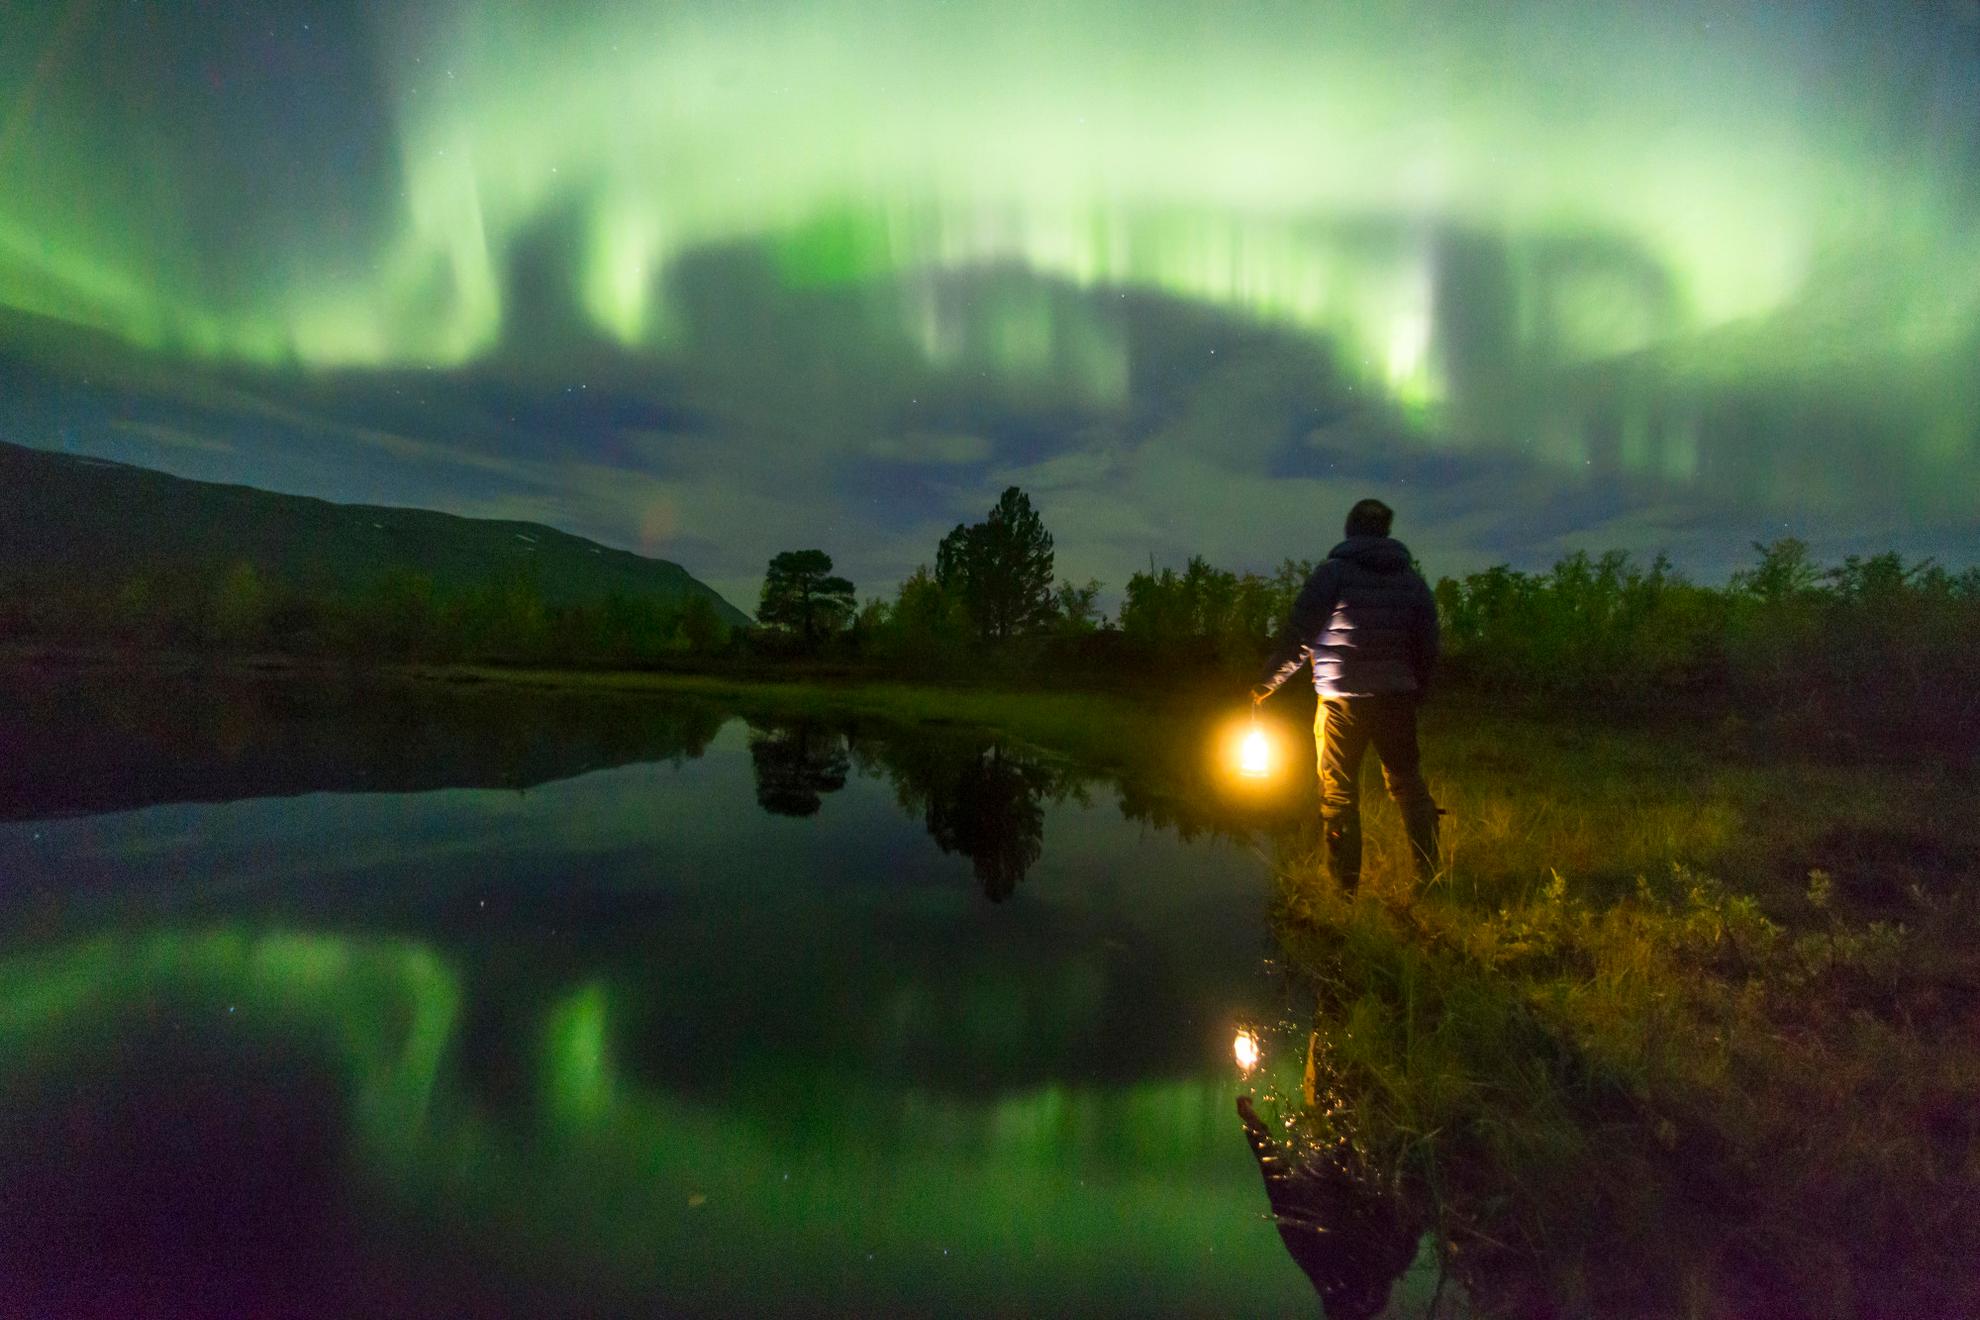 Een persoon die een lamp vasthoudt, kijkt naar het groene noorderlicht aan de hemel. Het noorderlicht reflecteert in het meer naast de persoon.